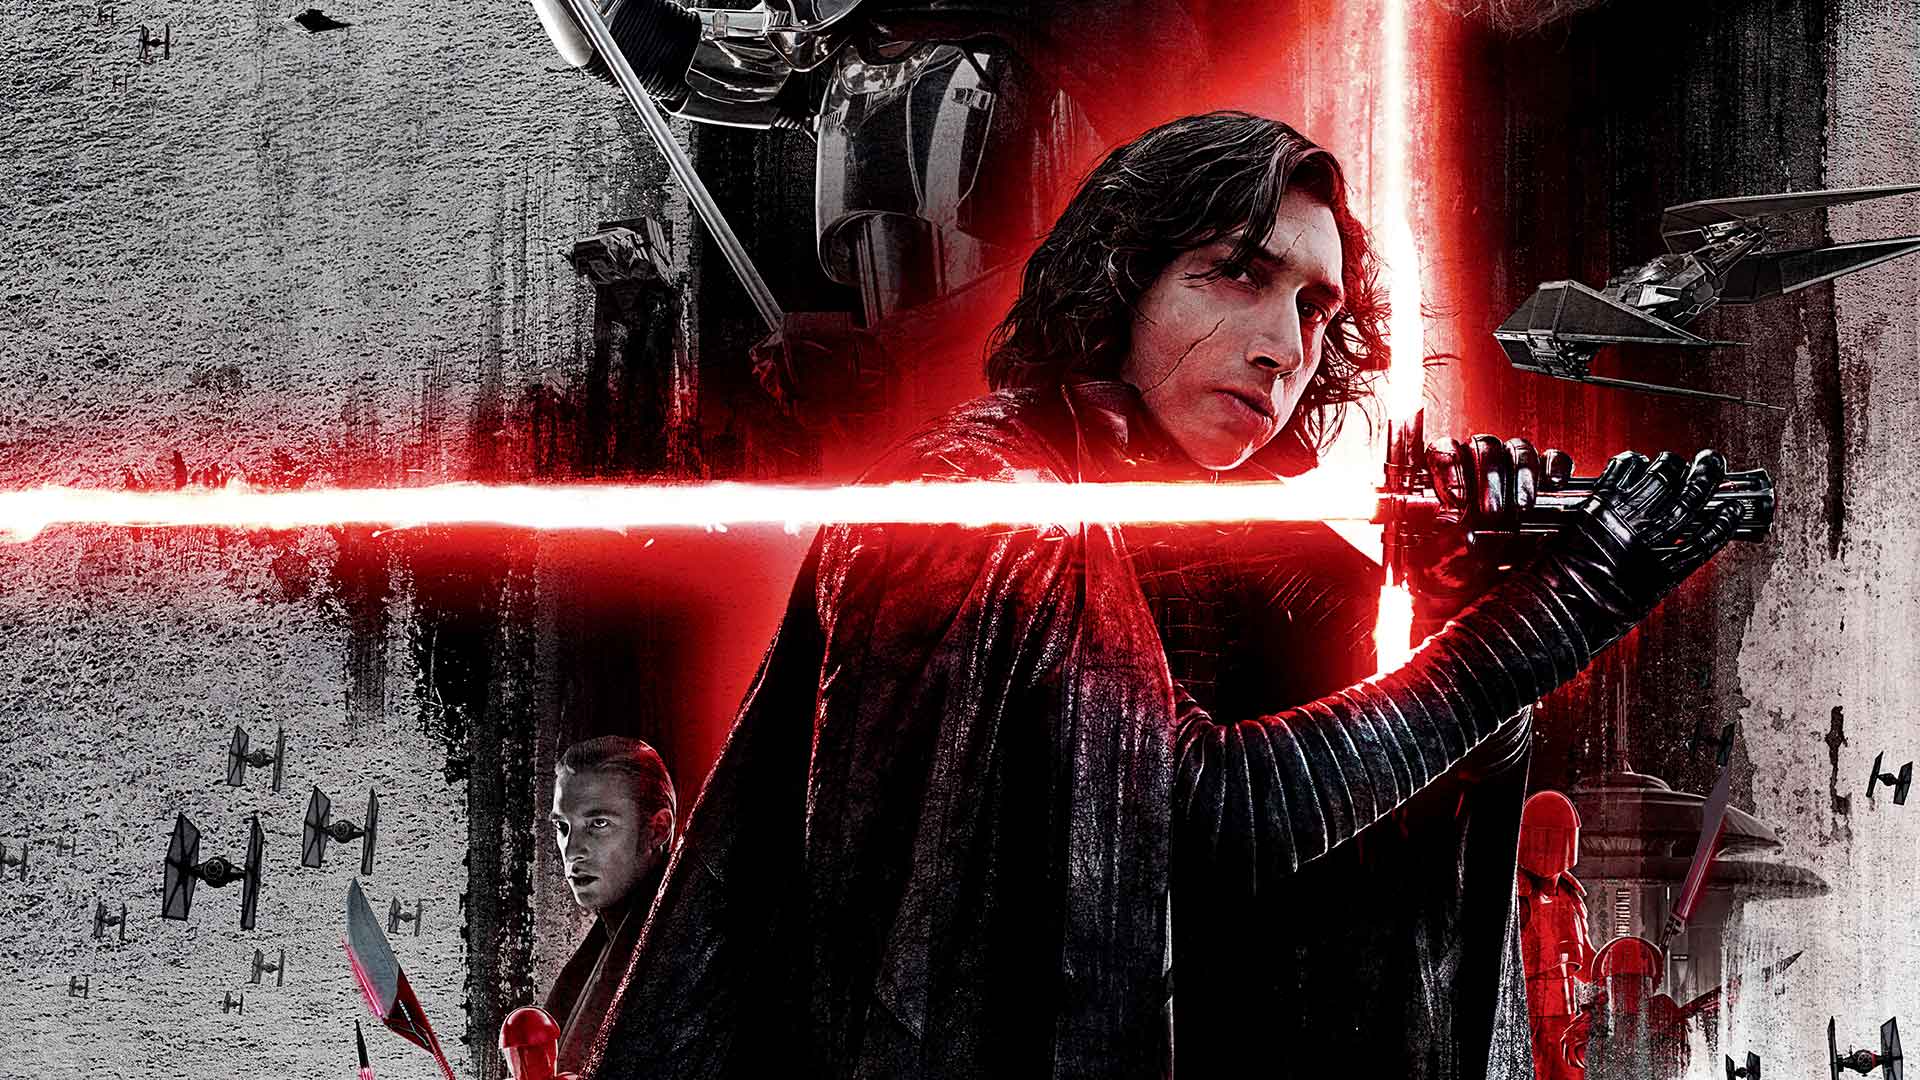 Star Wars: The Last Jedi, Full Movie